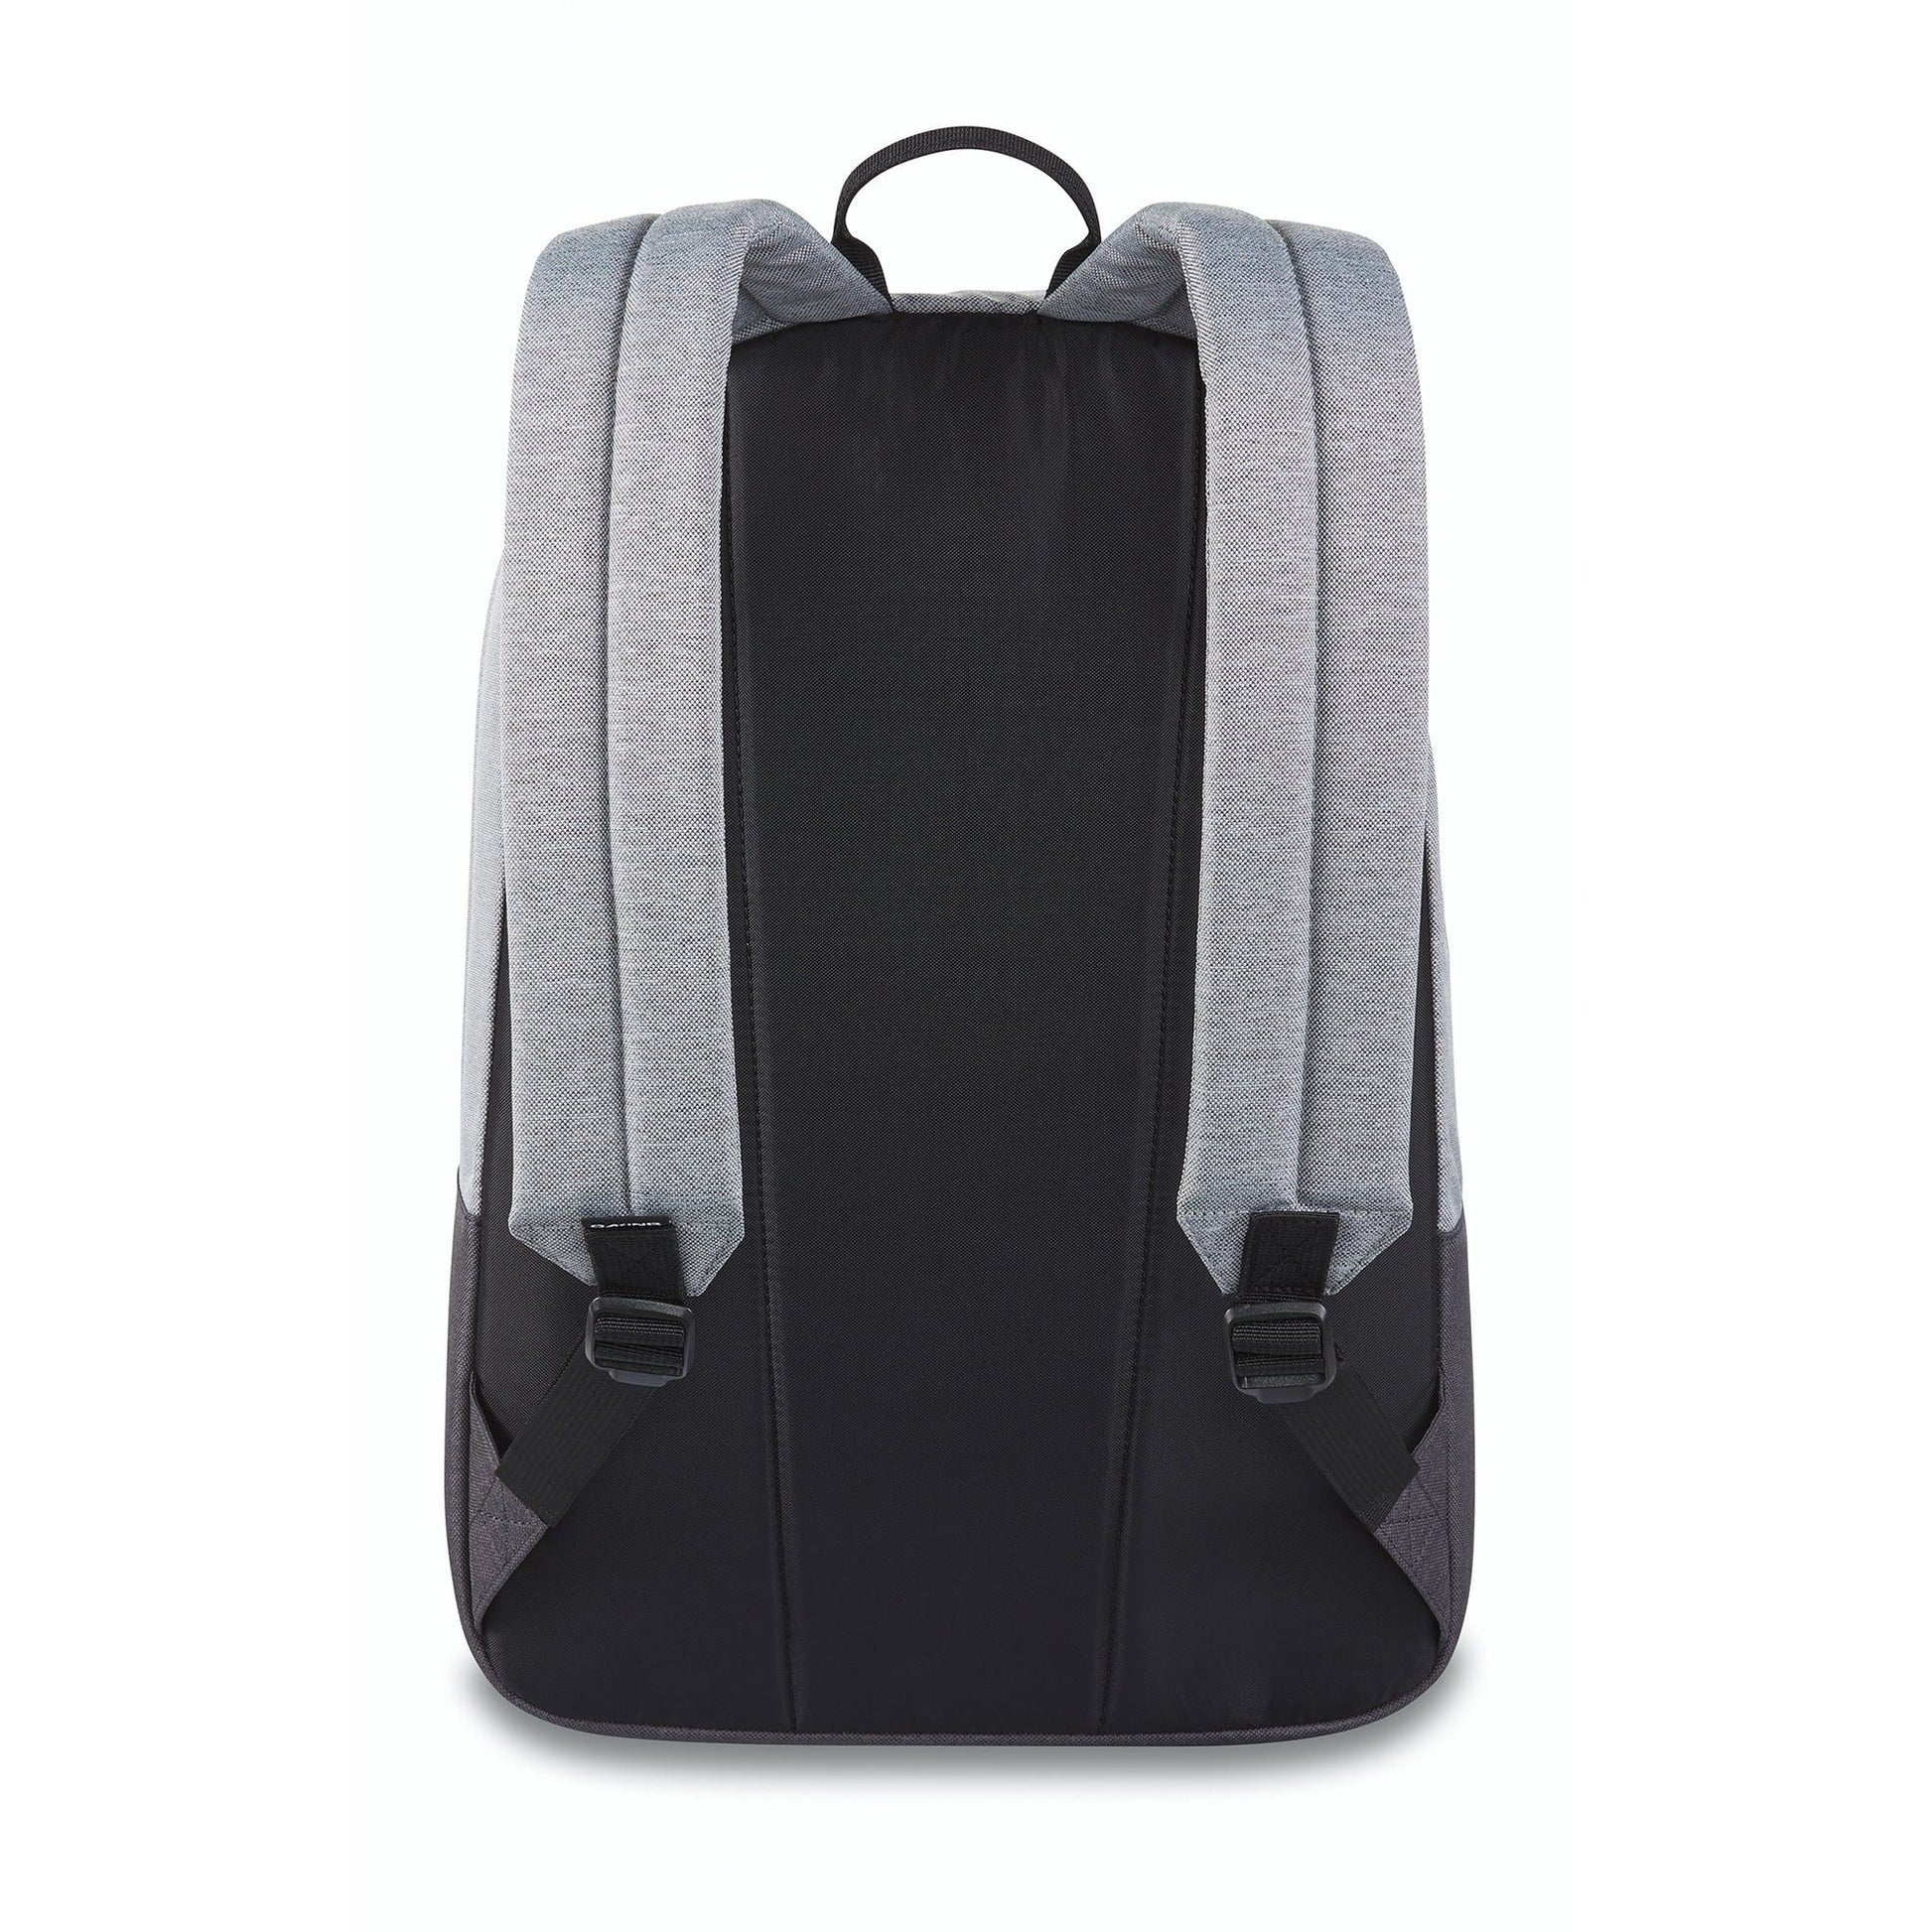 Dakine 365 Pack 21L Geyser Grey OS Backpacks